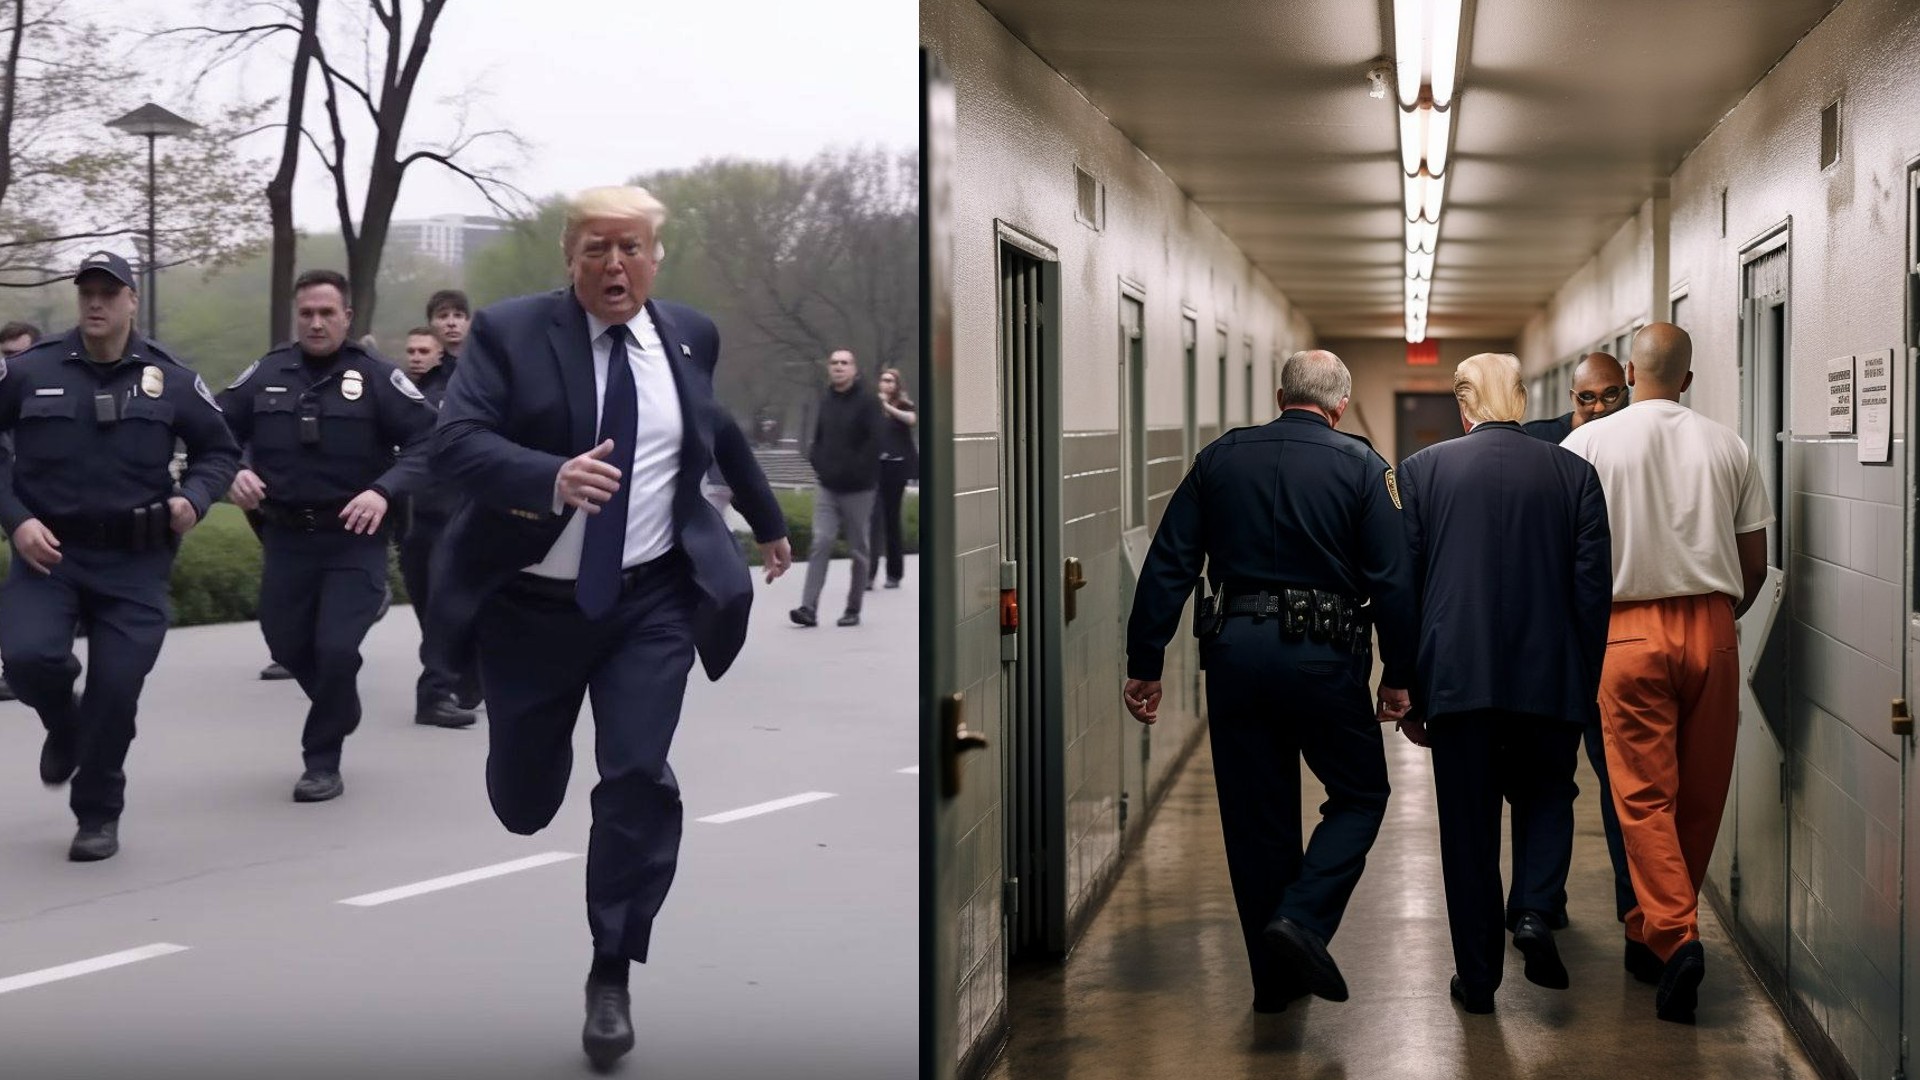 Así son las fotos del arresto de Donald Trump generadas por una inteligencia artificial que se hicieron virales